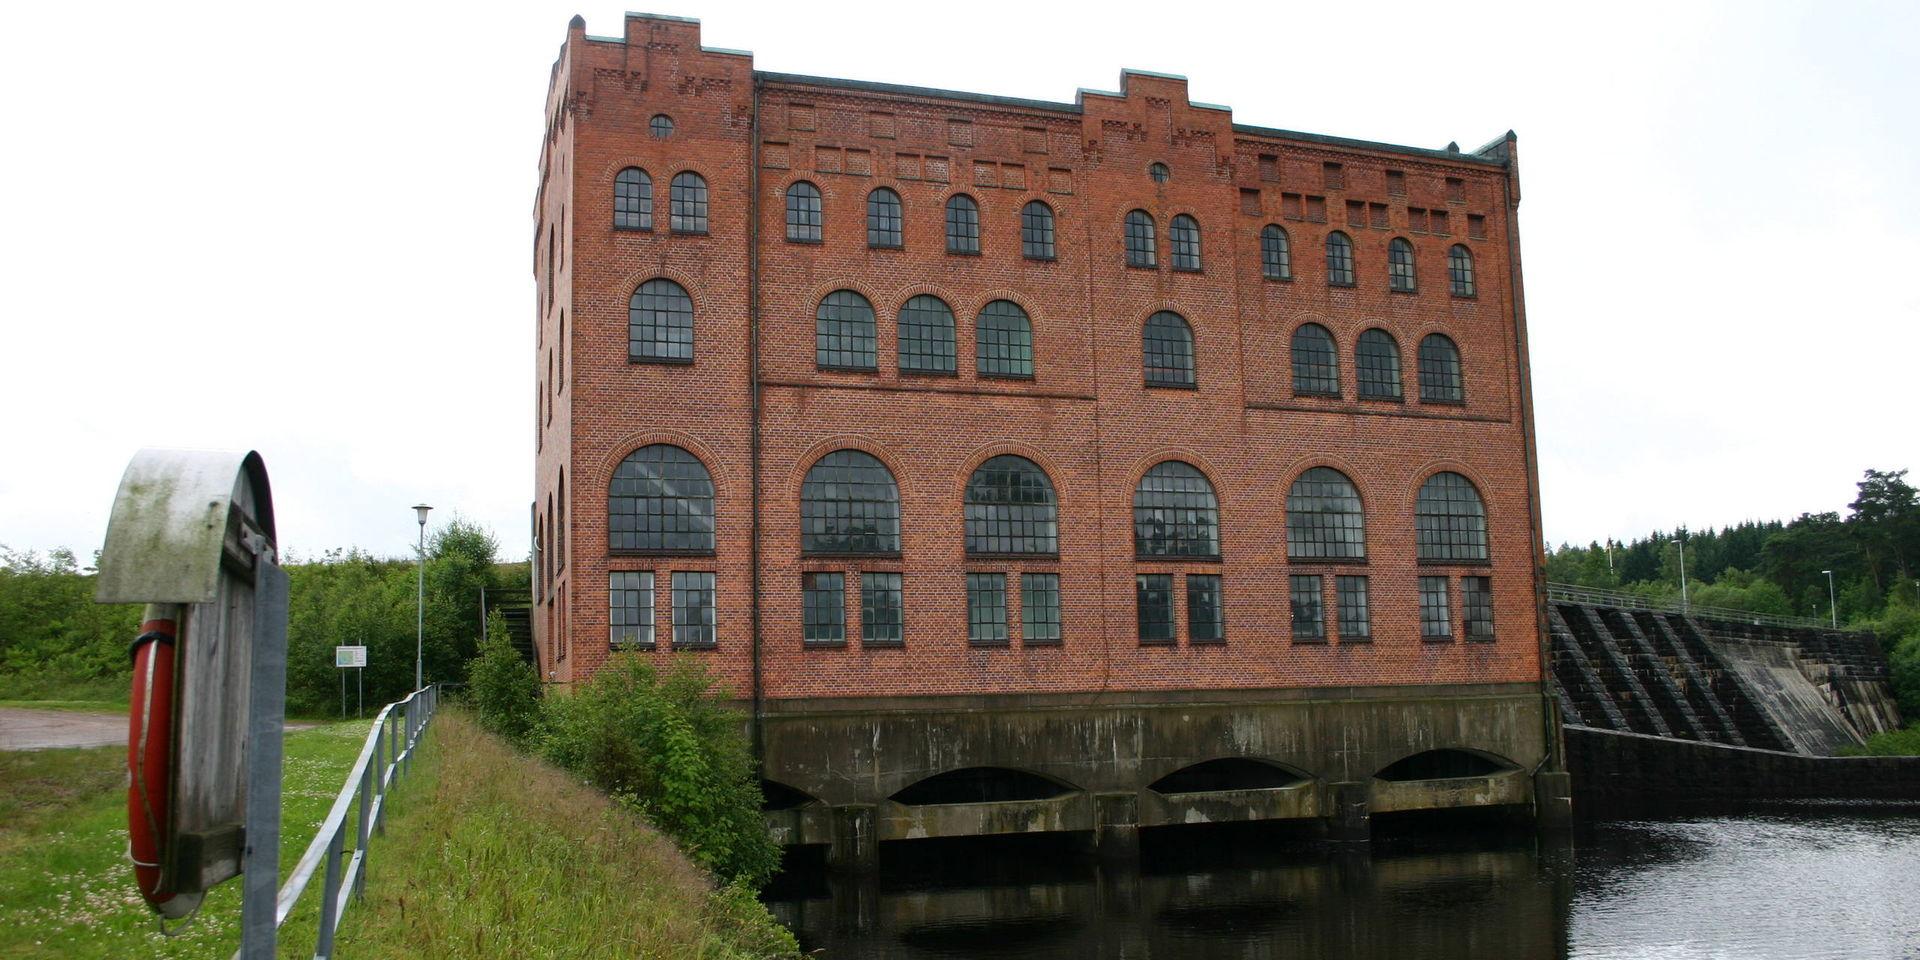 Knäred övre är en av de första kraftstationerna till Sydsvenska kraftaktiebolaget, senare känt som Sydkraft.